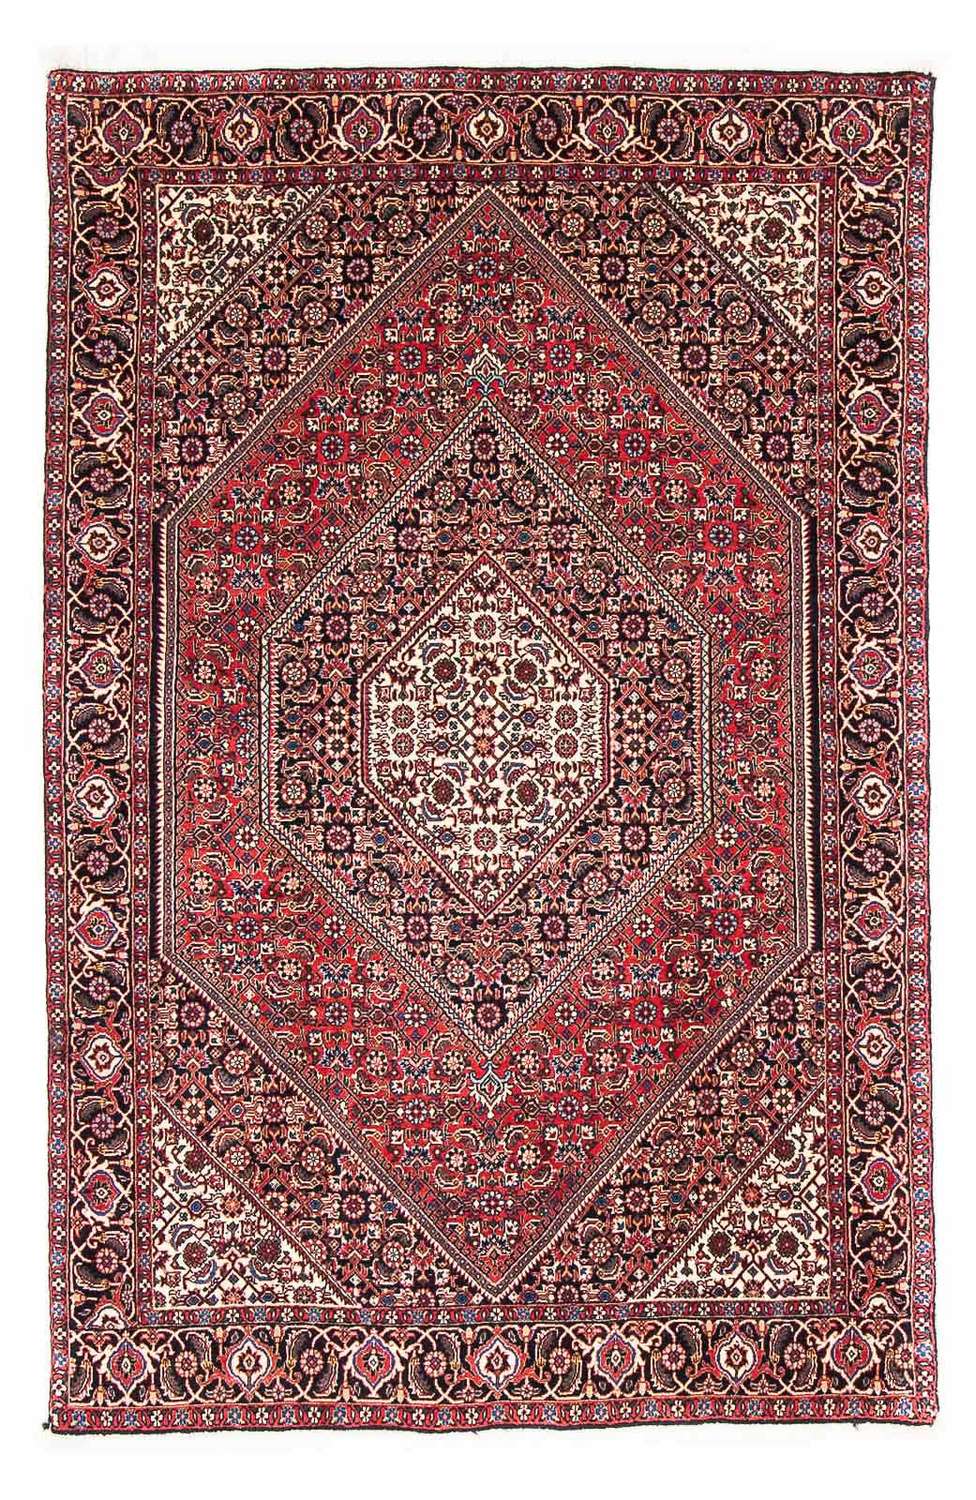 Dywan perski - Bijar - 170 x 110 cm - czerwony